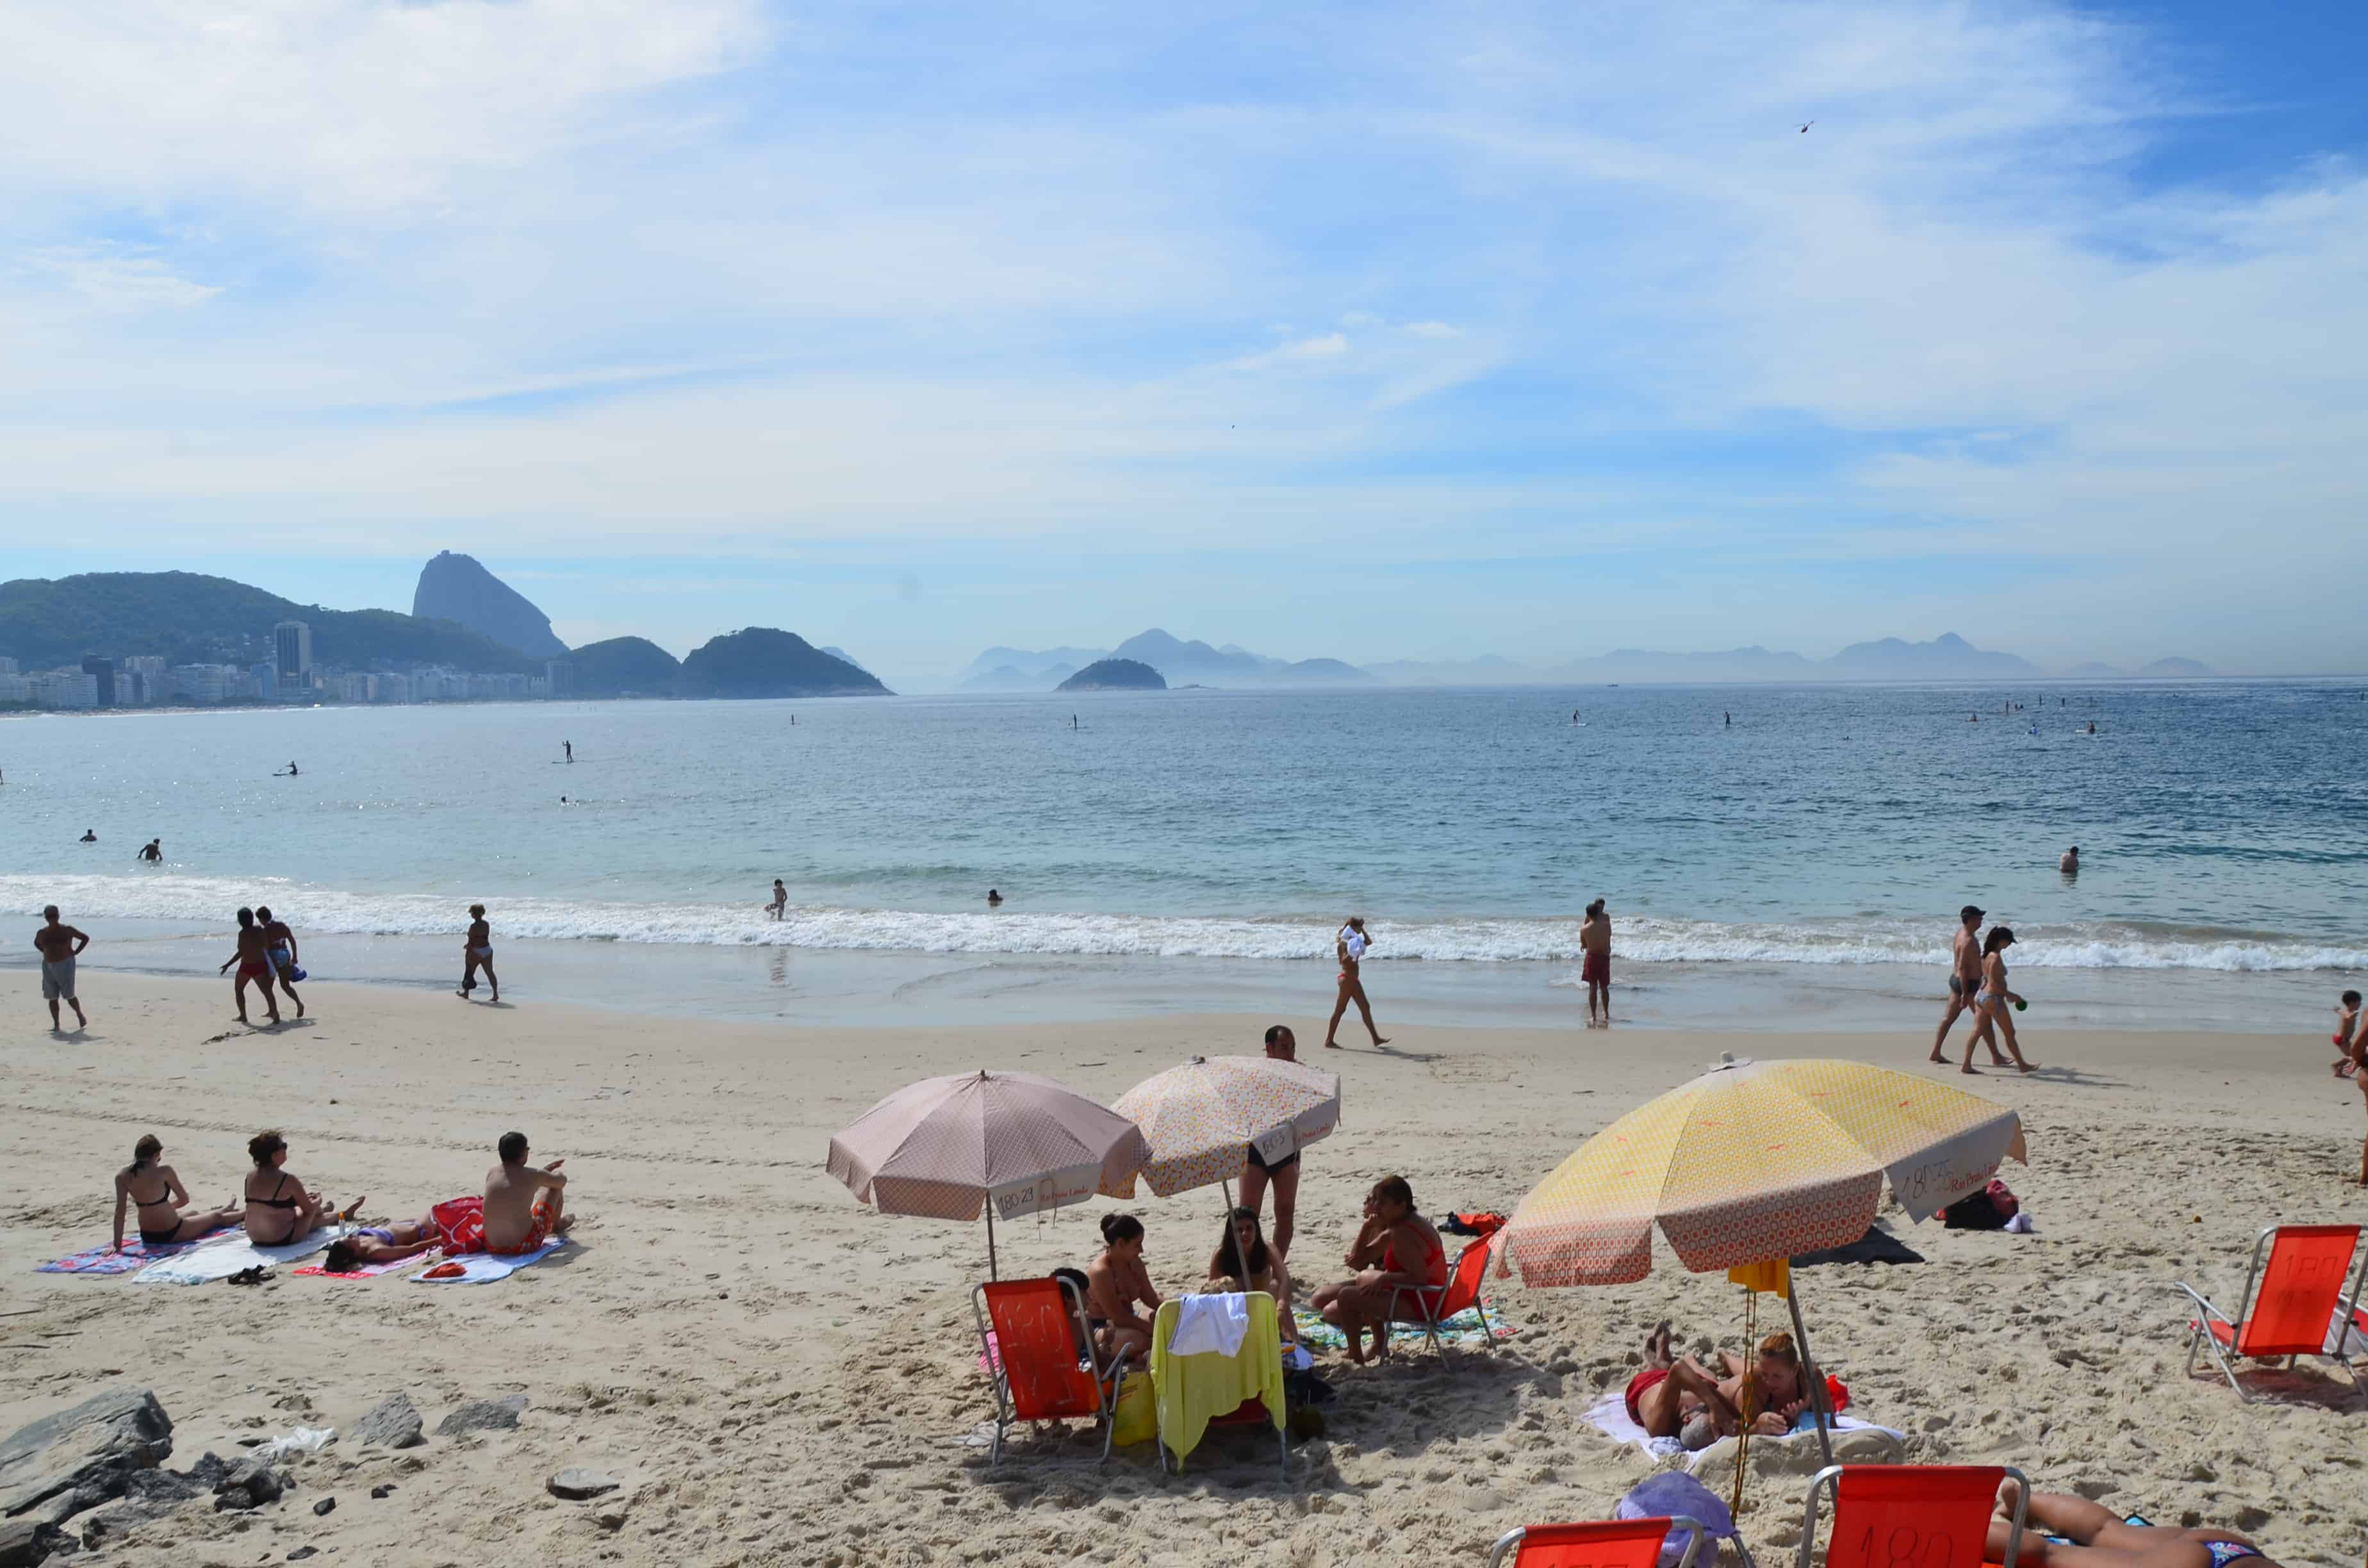 Copacabana in Rio de Janeiro, Brazil